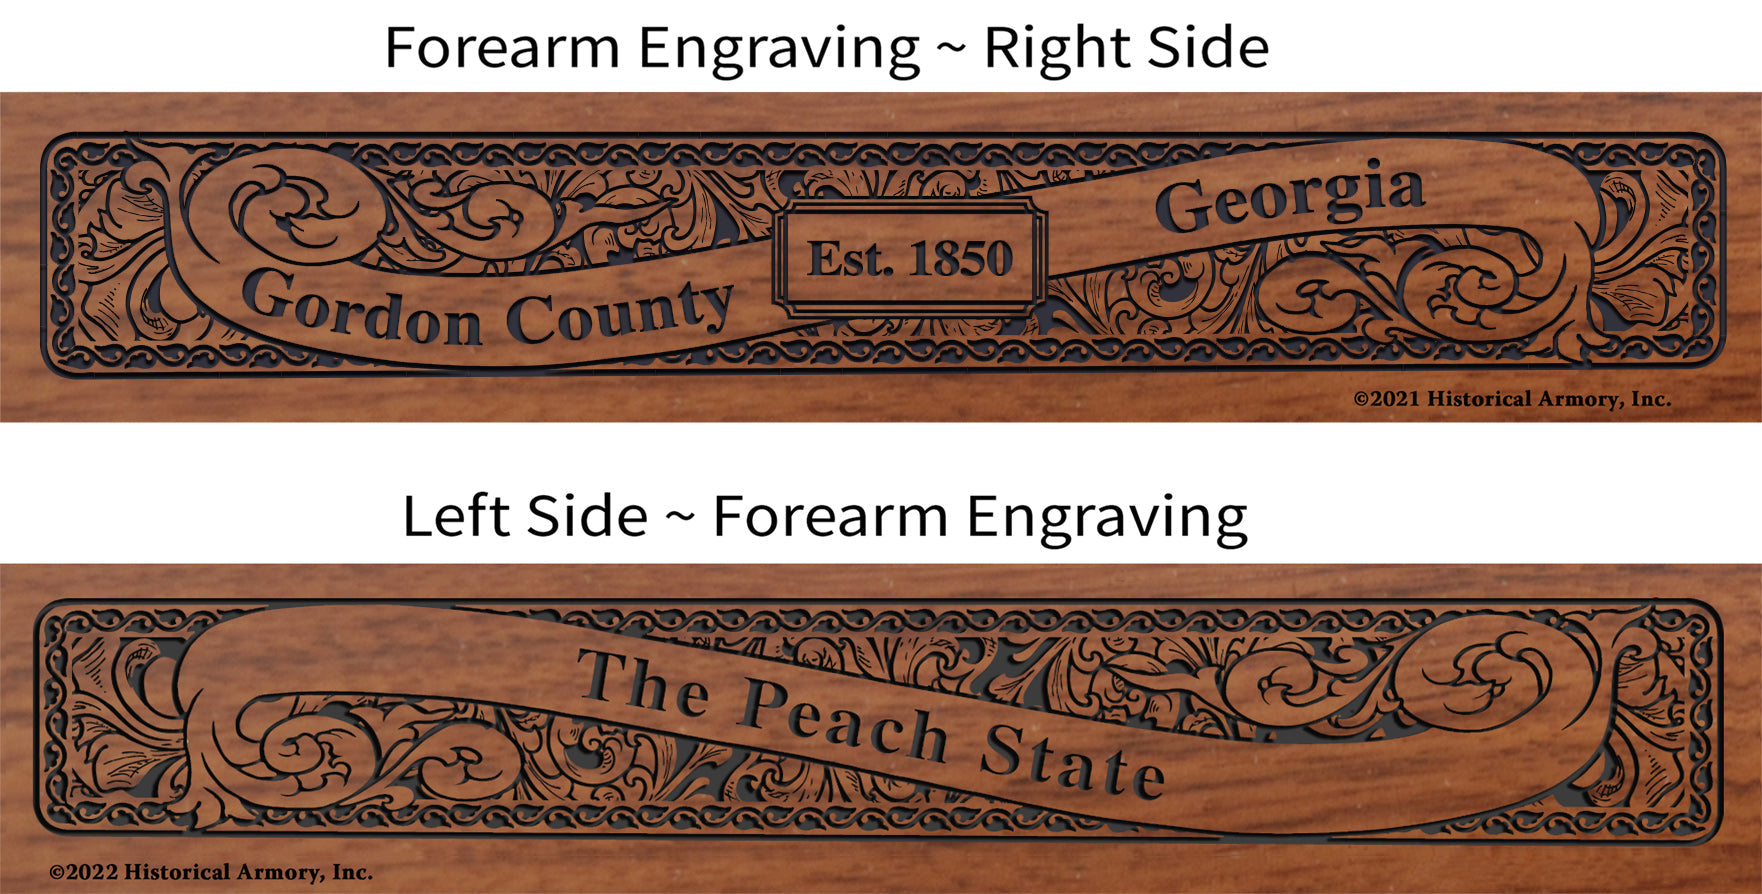 Gordon County Georgia Establishment and Motto History Engraved Rifle Forearm